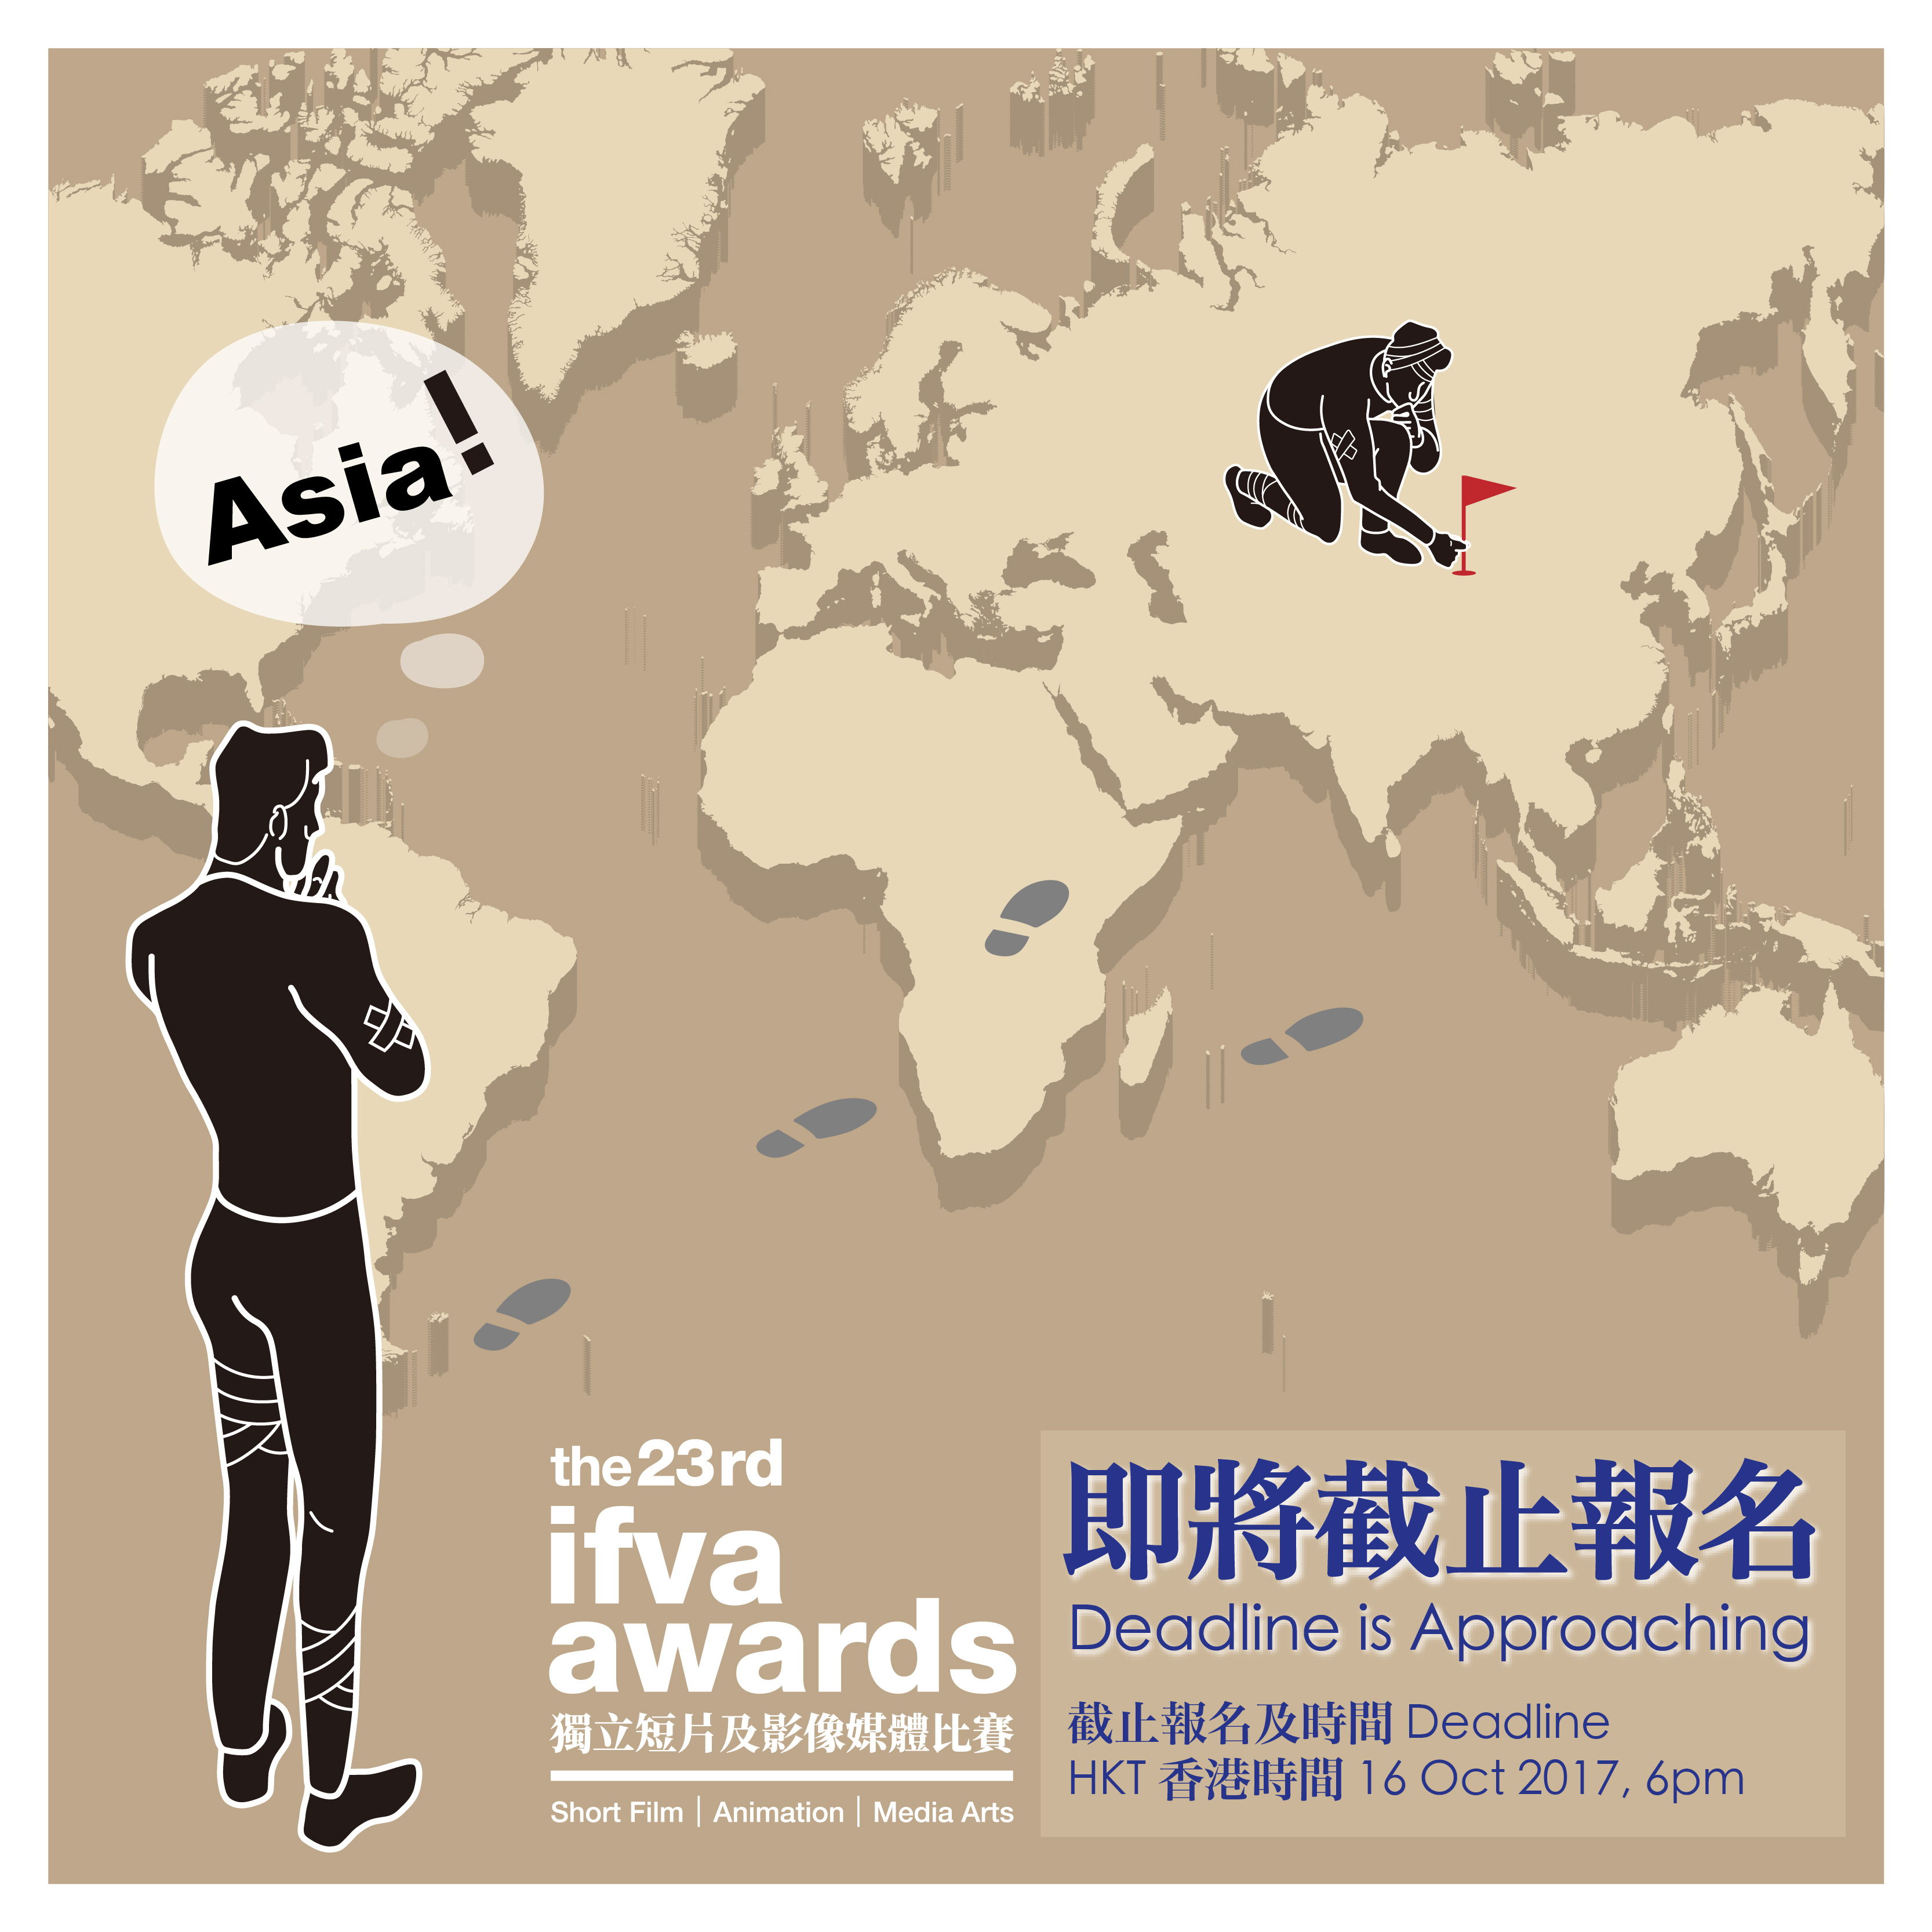 The 23rd ifva Awards